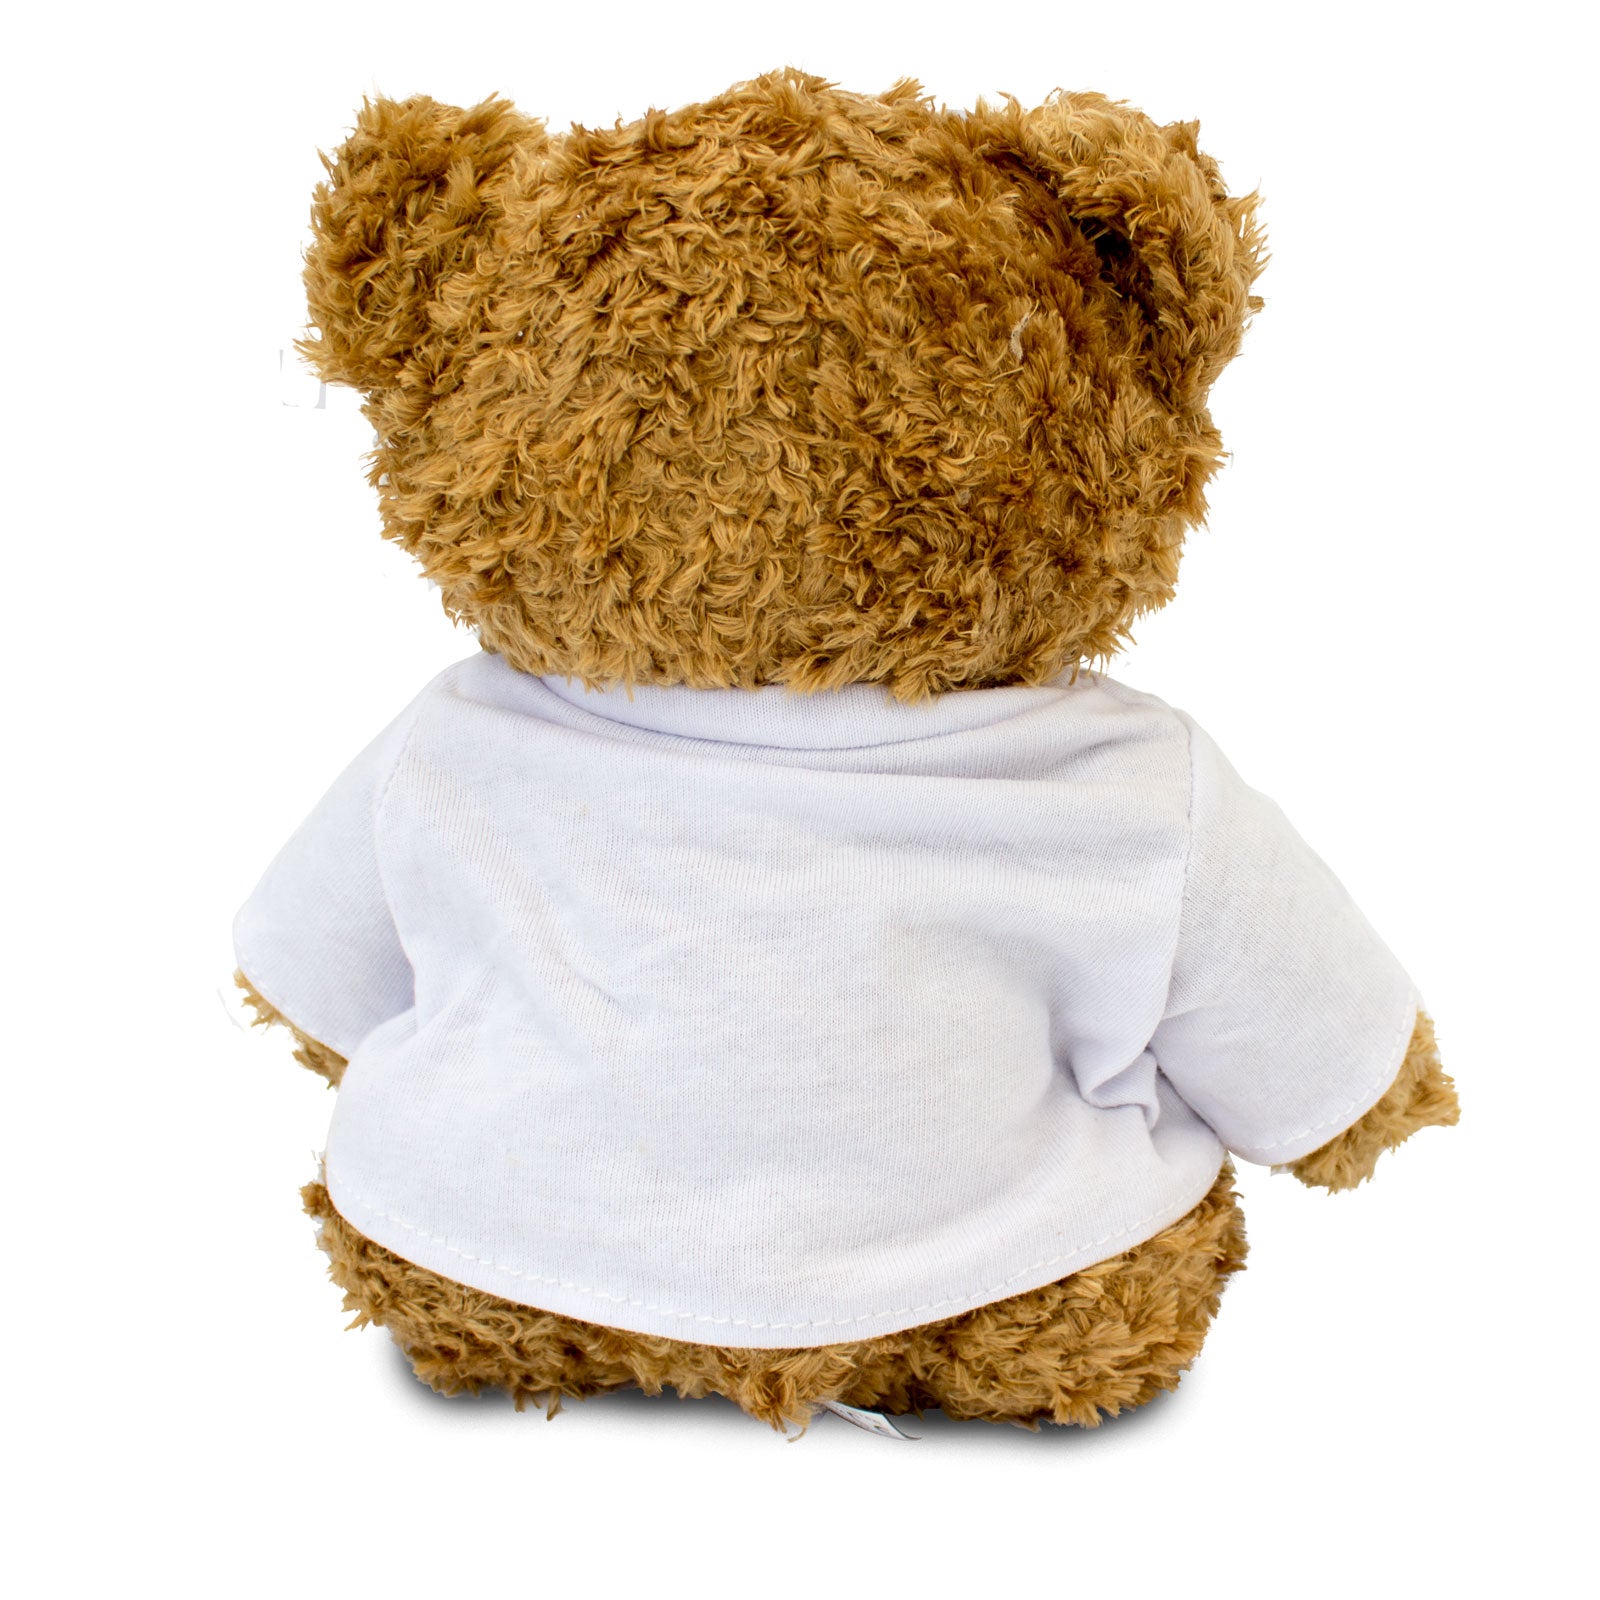 I Love Papa - Teddy Bear